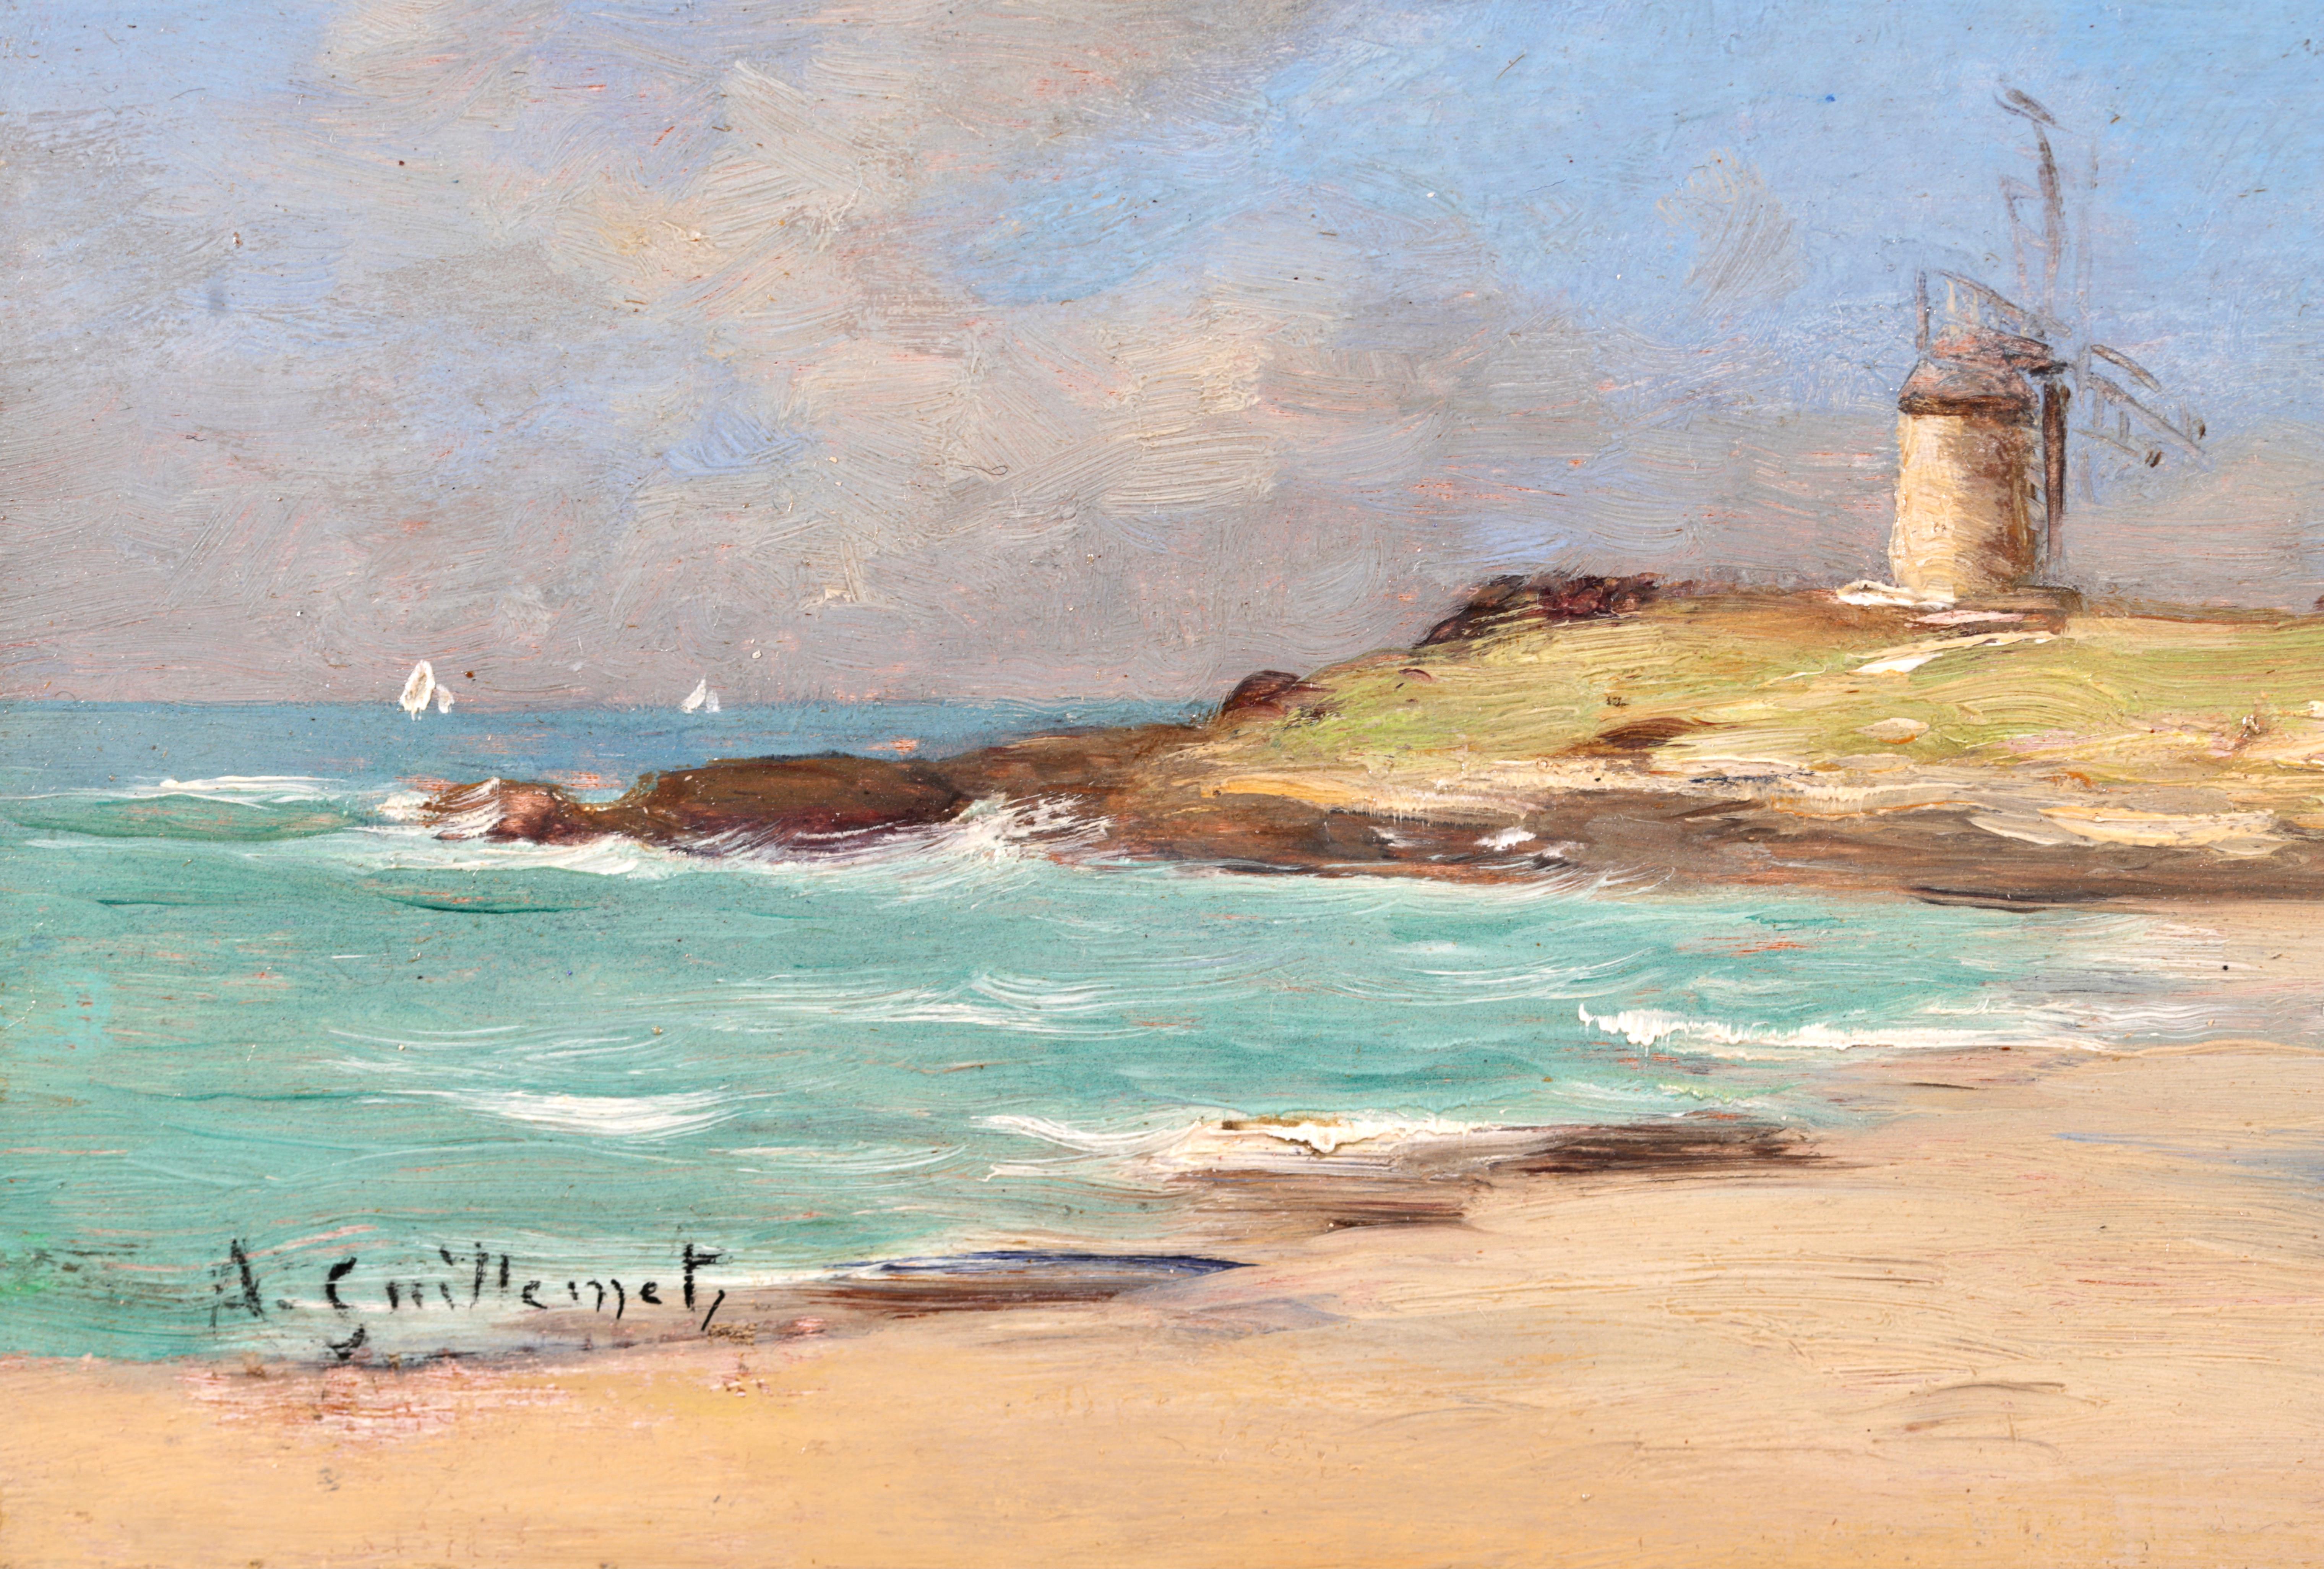 Huile sur panneau signée d'un paysage côtier vers 1890 par le peintre impressionniste français Jean Baptiste Antoine Guillemet. L'œuvre représente plusieurs femmes en costume traditionnel marchant sur le sable au bord de la côte, avec des moulins à